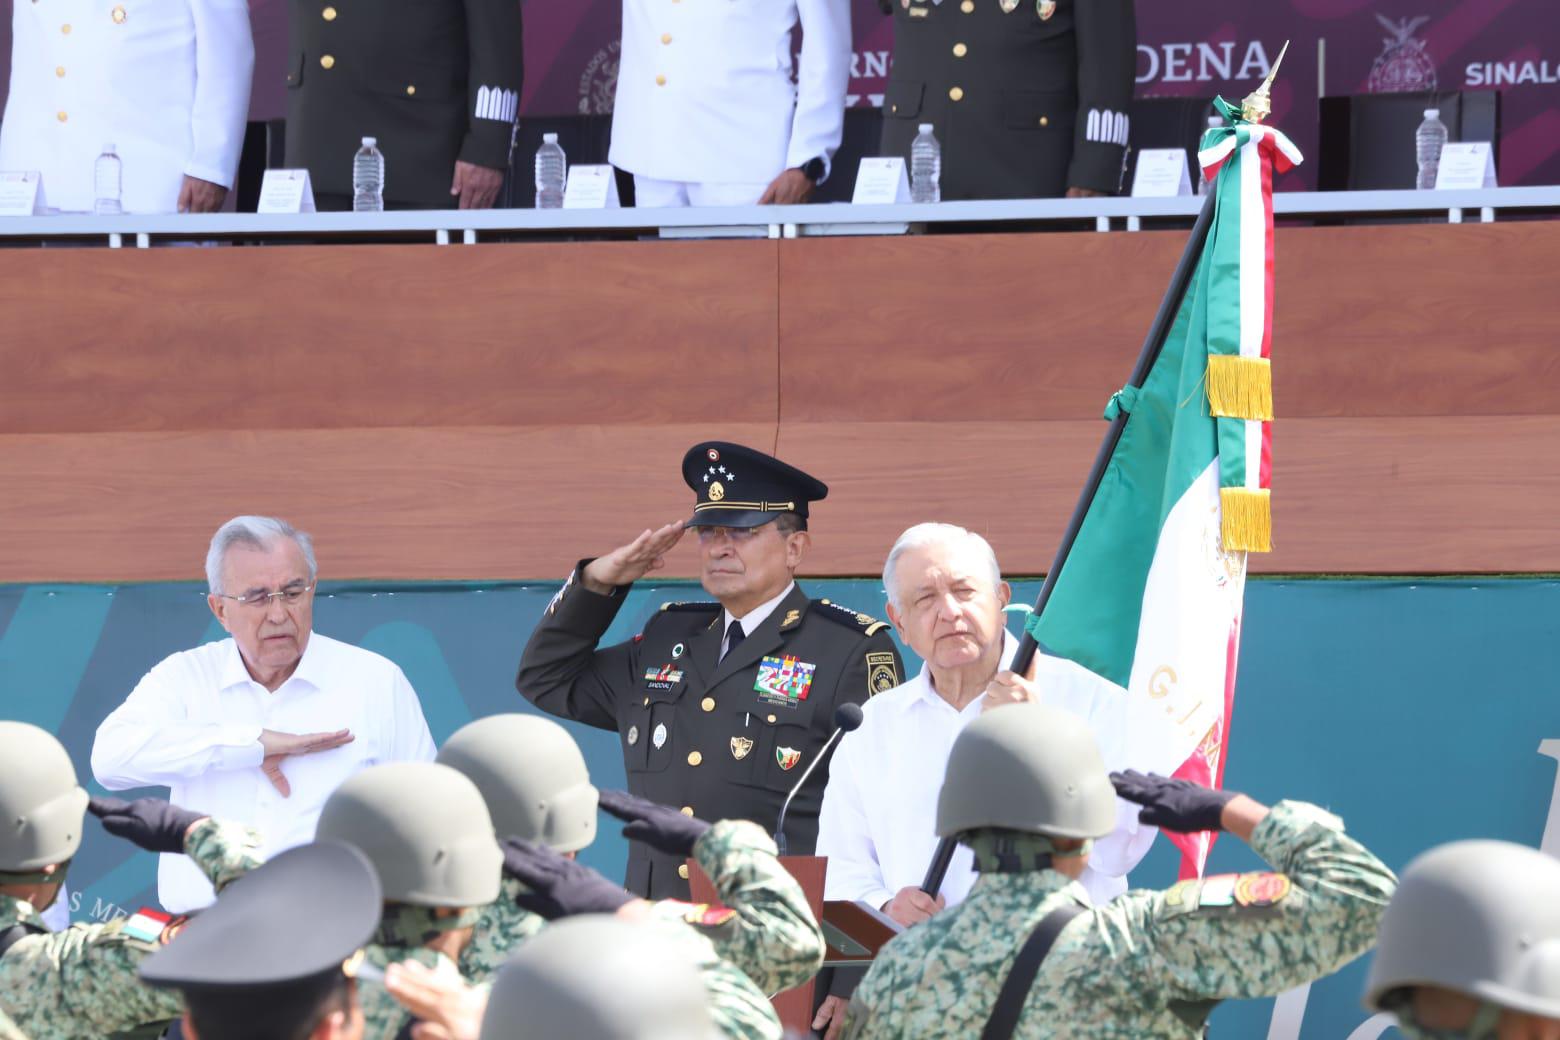 $!Encabeza AMLO celebración del Día de la Bandera en la Glorieta Sánchez Taboada de Mazatlán